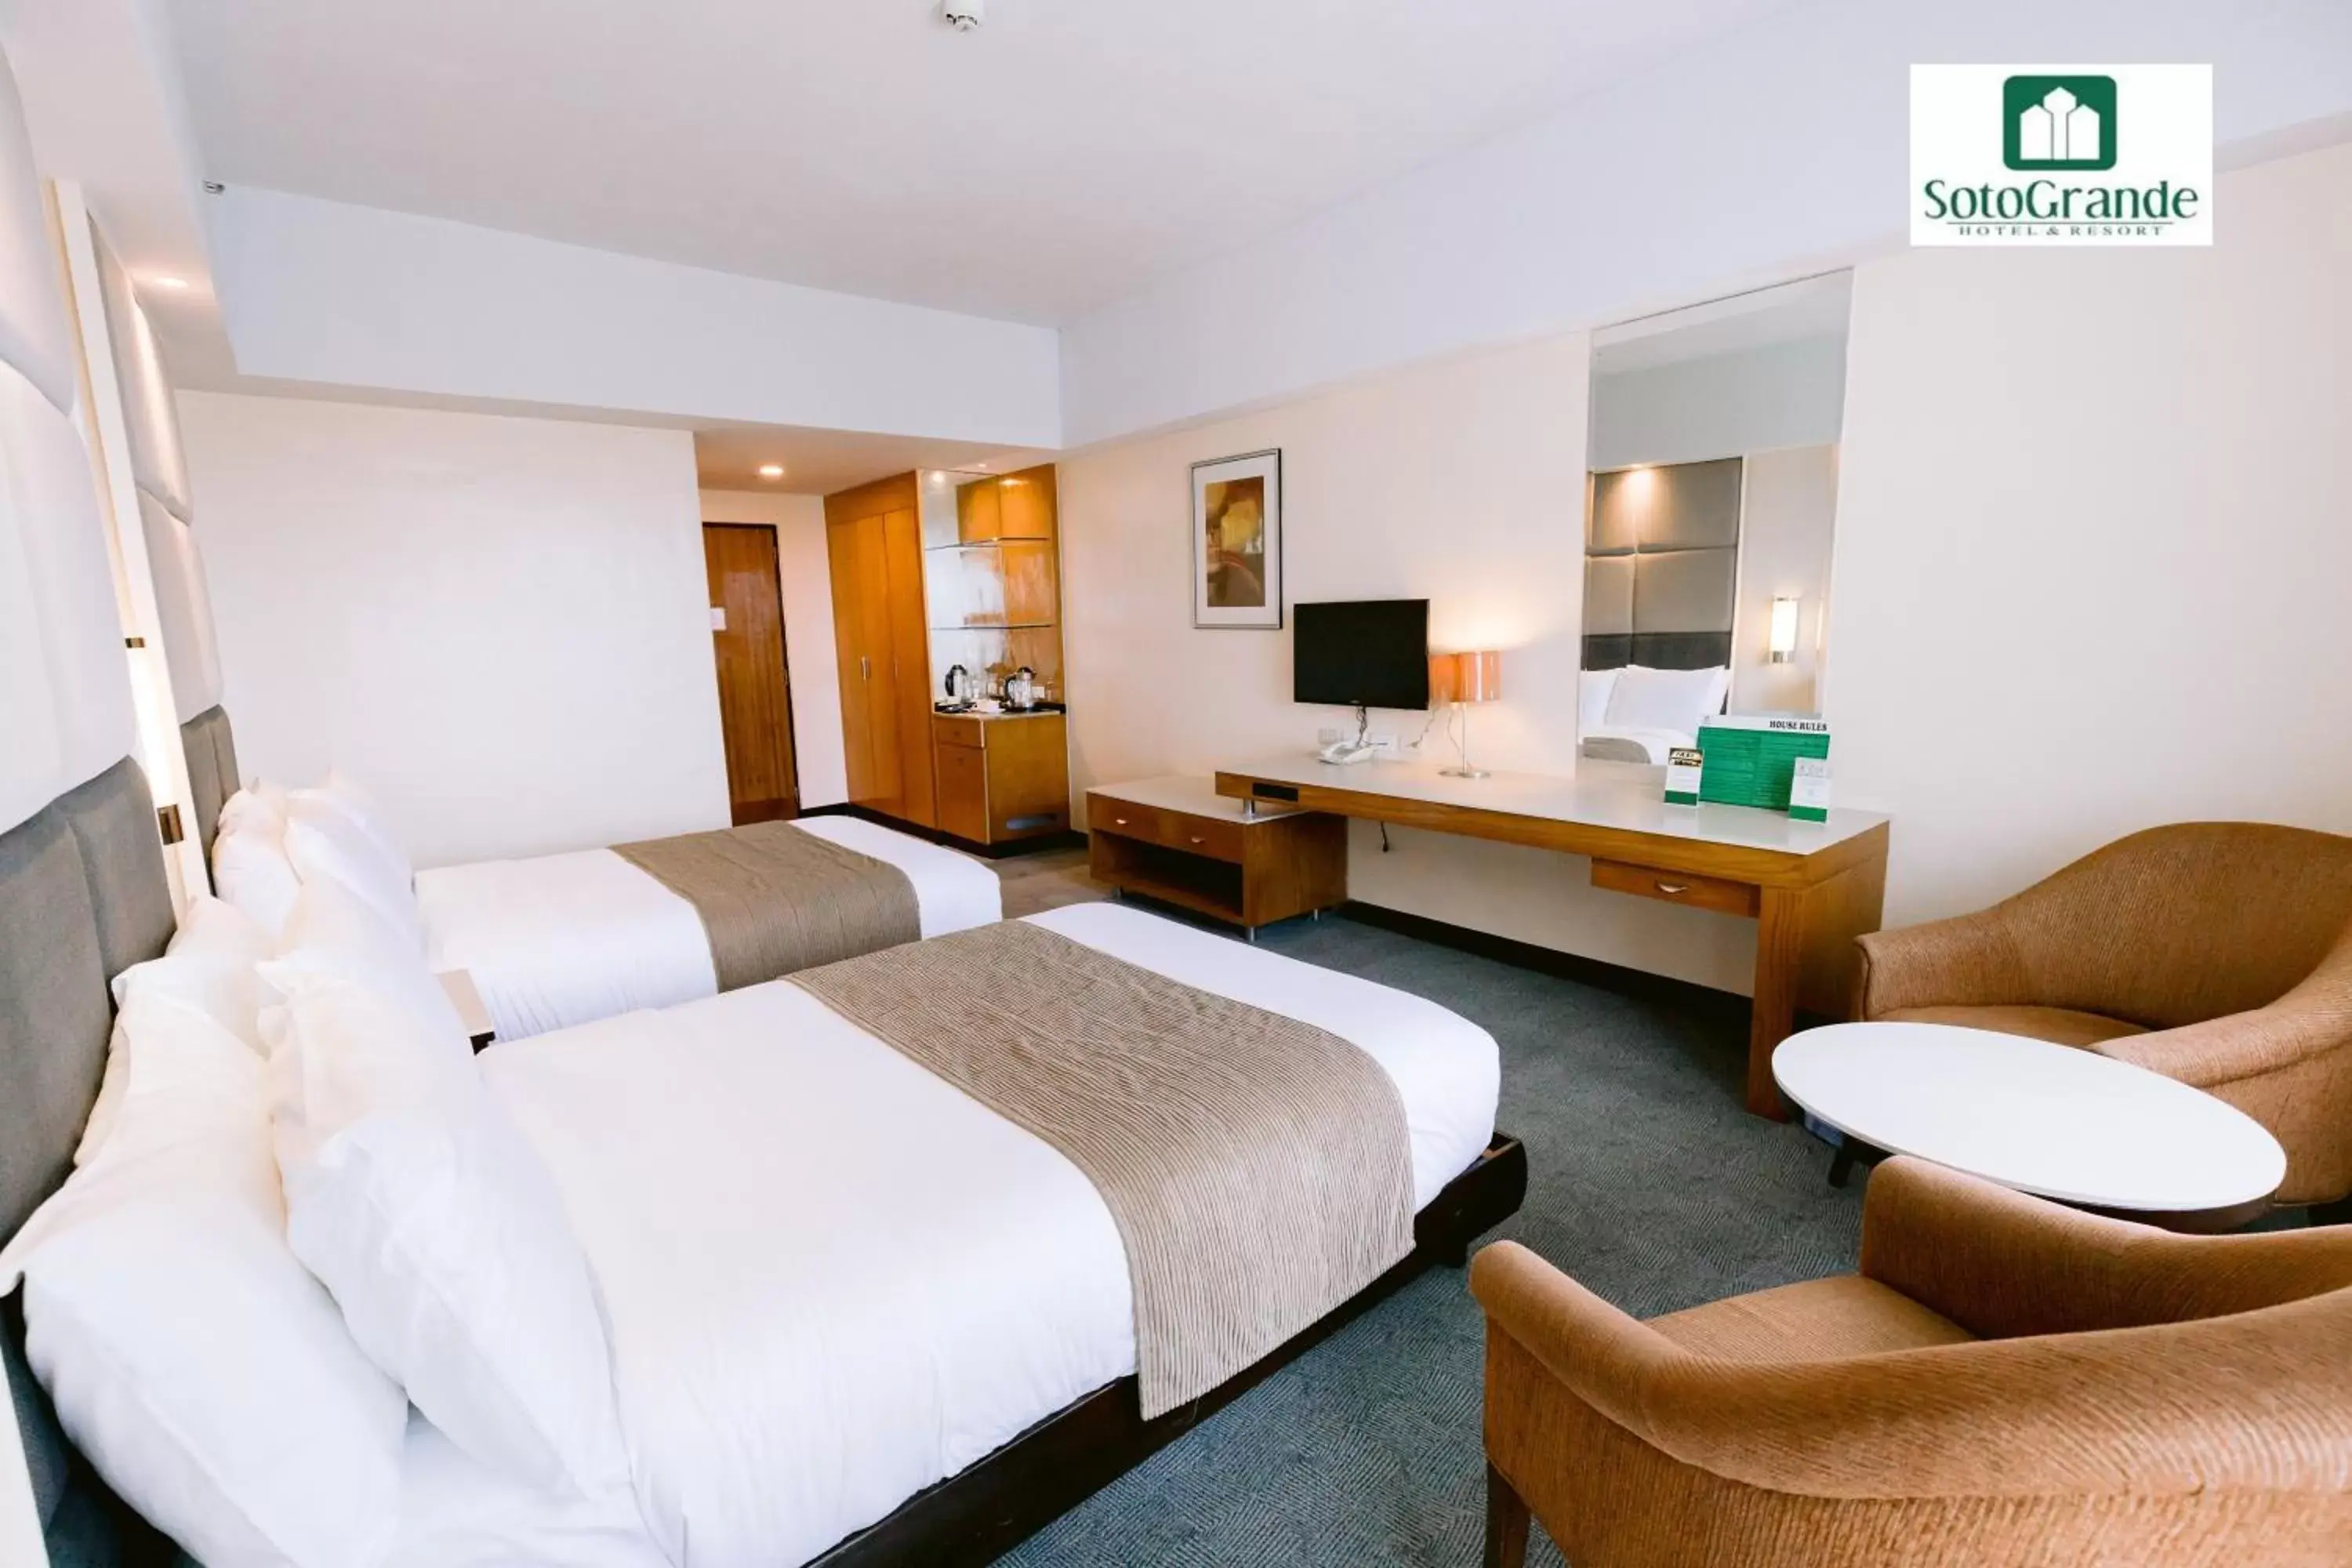 Bedroom in Sotogrande Hotel and Resort